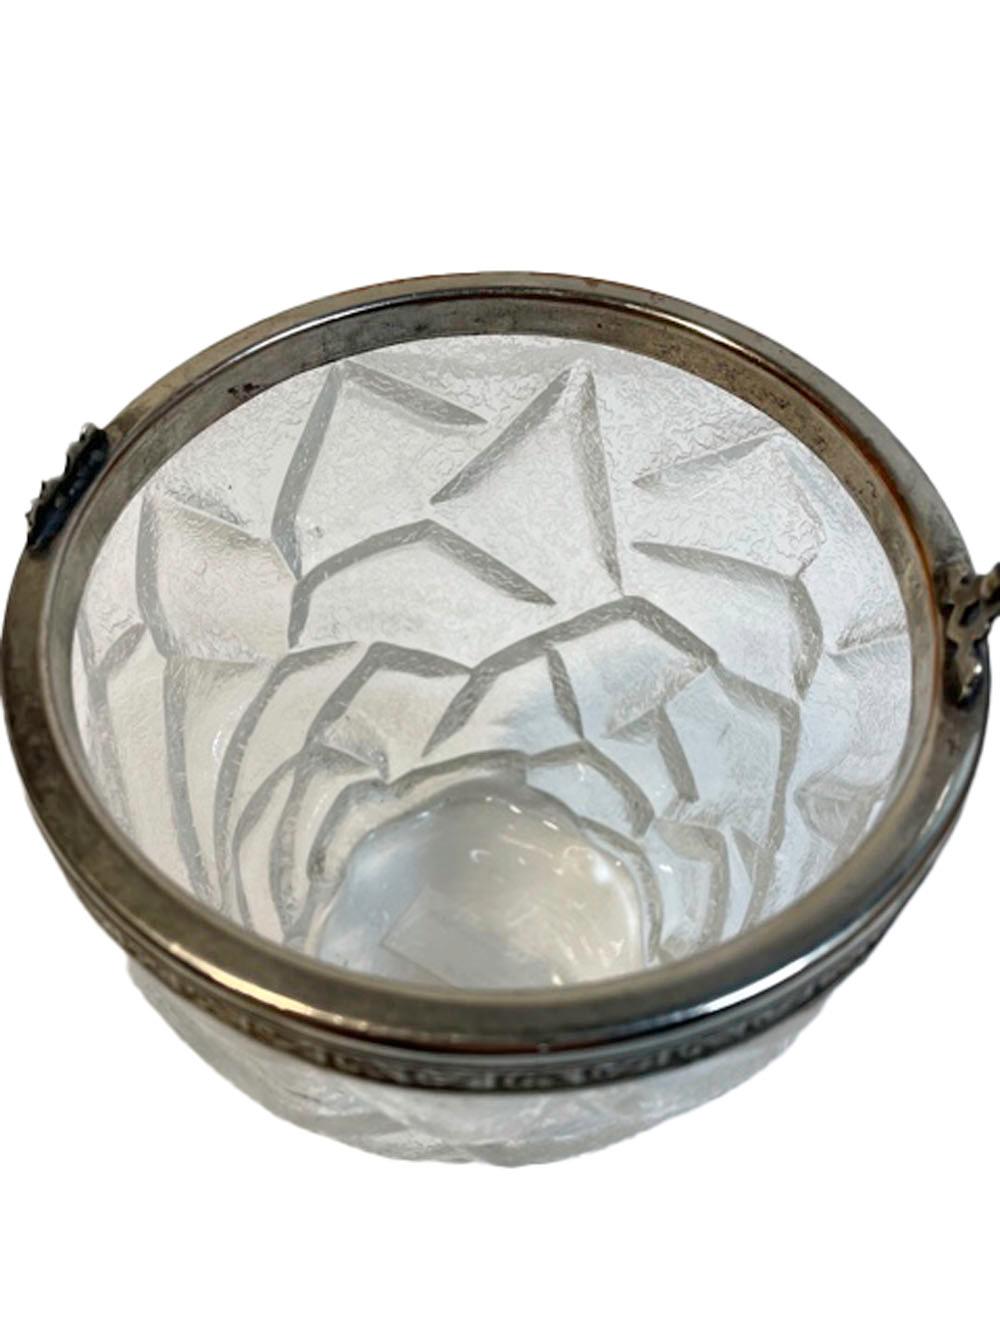 Vieux seau à glace en verre moulé en forme de seau avec une surface givrée moulée pour ressembler à de la glace craquelée. Le bord en métal argenté avec un côté moulé en feuille et une poignée pivotante attachée.